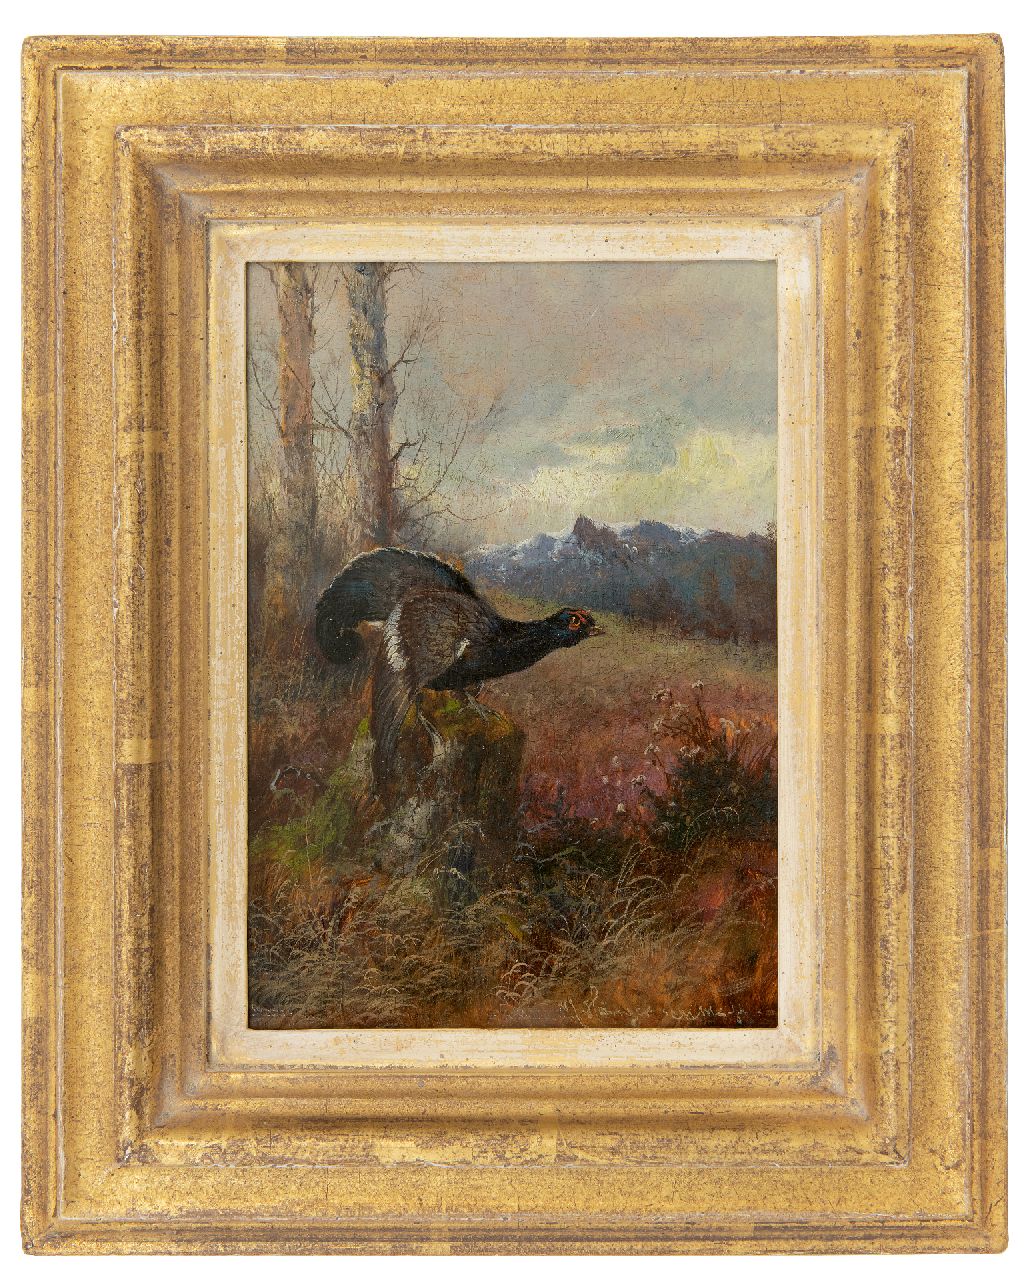 Hänger M.  | Max Hänger | Schilderijen te koop aangeboden | Auerhoen naar rechts kijkend (uit een paar), olieverf op paneel 19,7 x 13,8 cm, gesigneerd rechtsonder